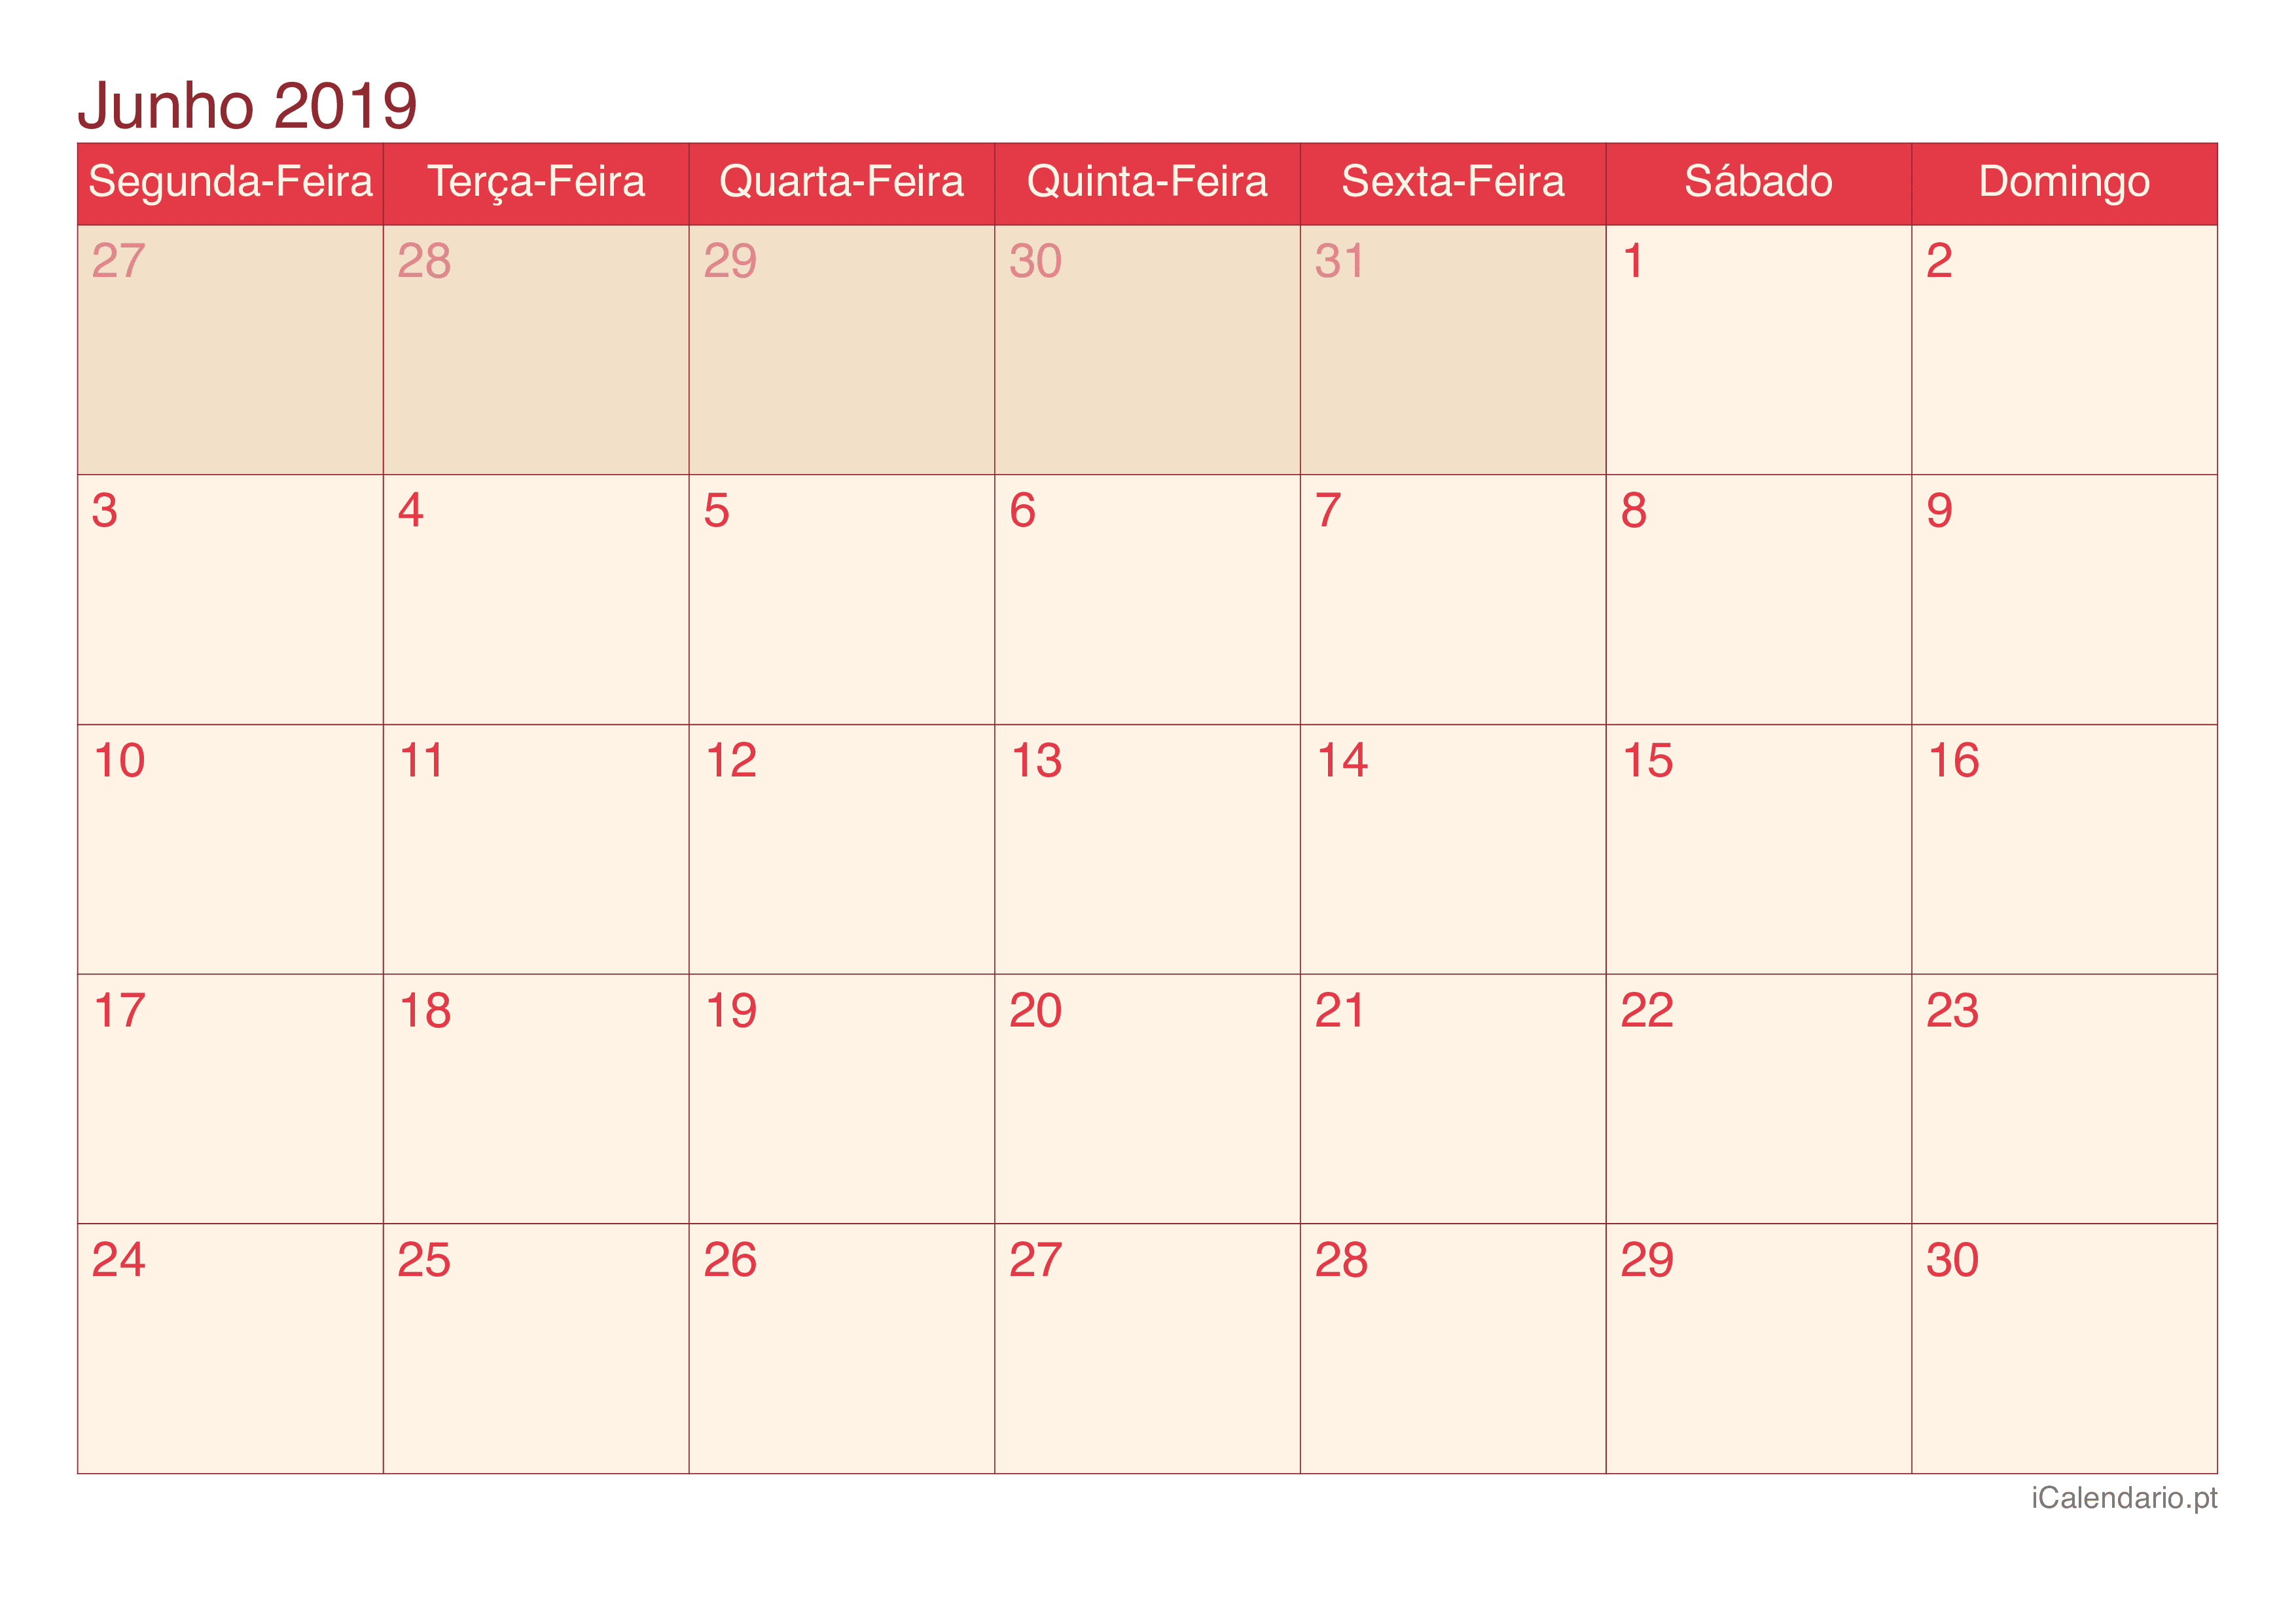 Calendário de junho 2019 - Cherry